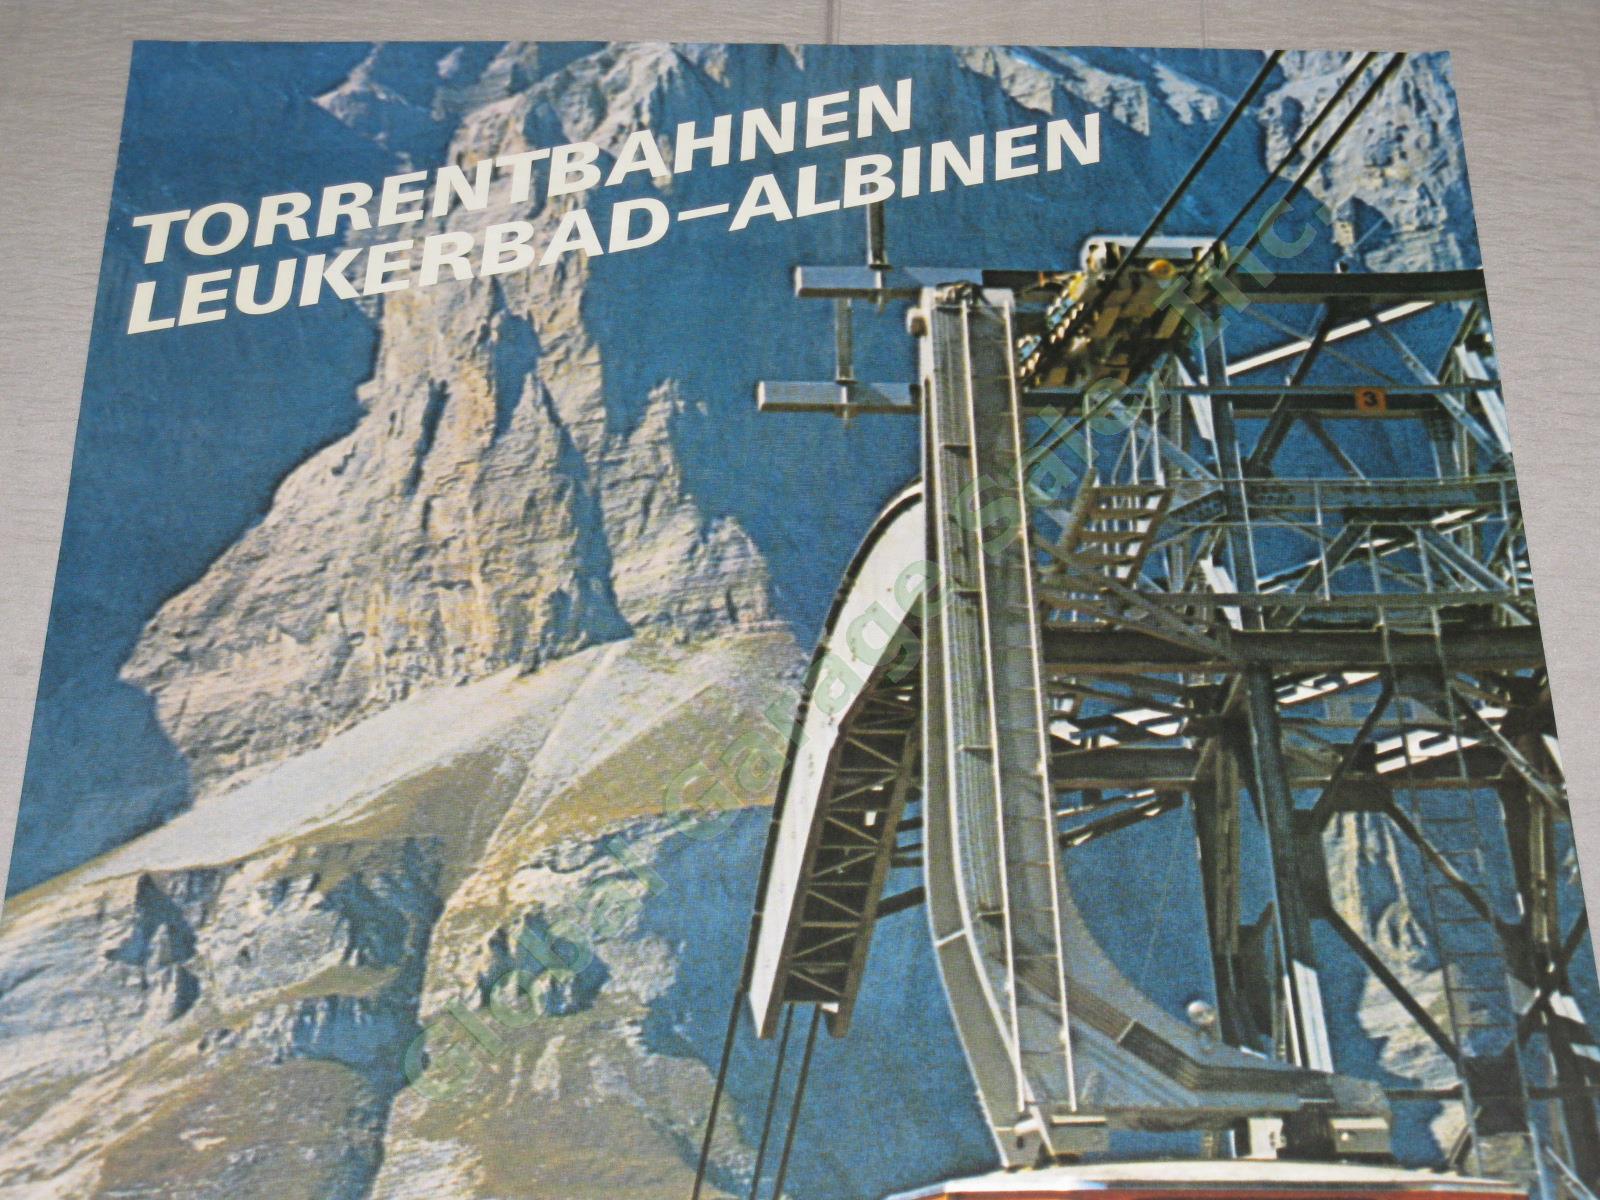 Vtg 1974 Swiss Travel Poster Leukerbad-Albinen Valais Ski Resort Hot Springs NR! 1